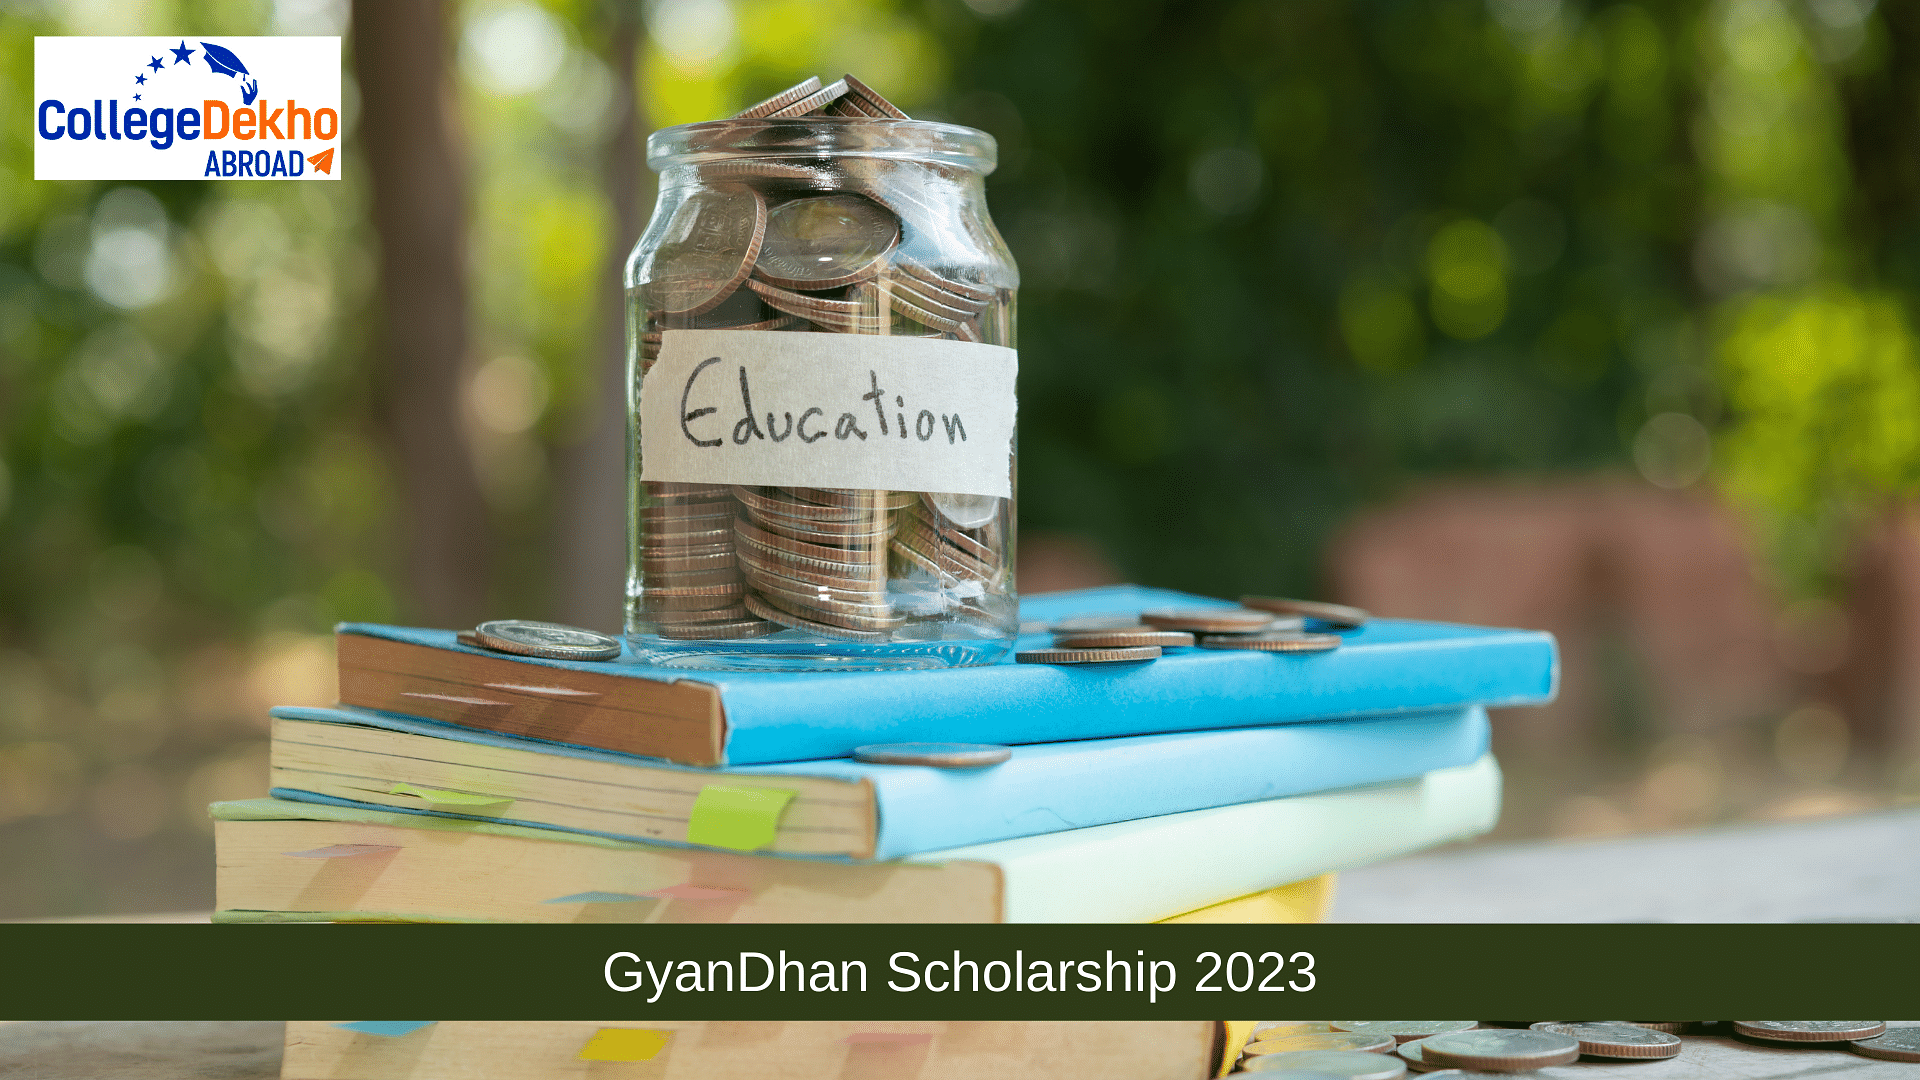 GyanDhan Scholarship 2023